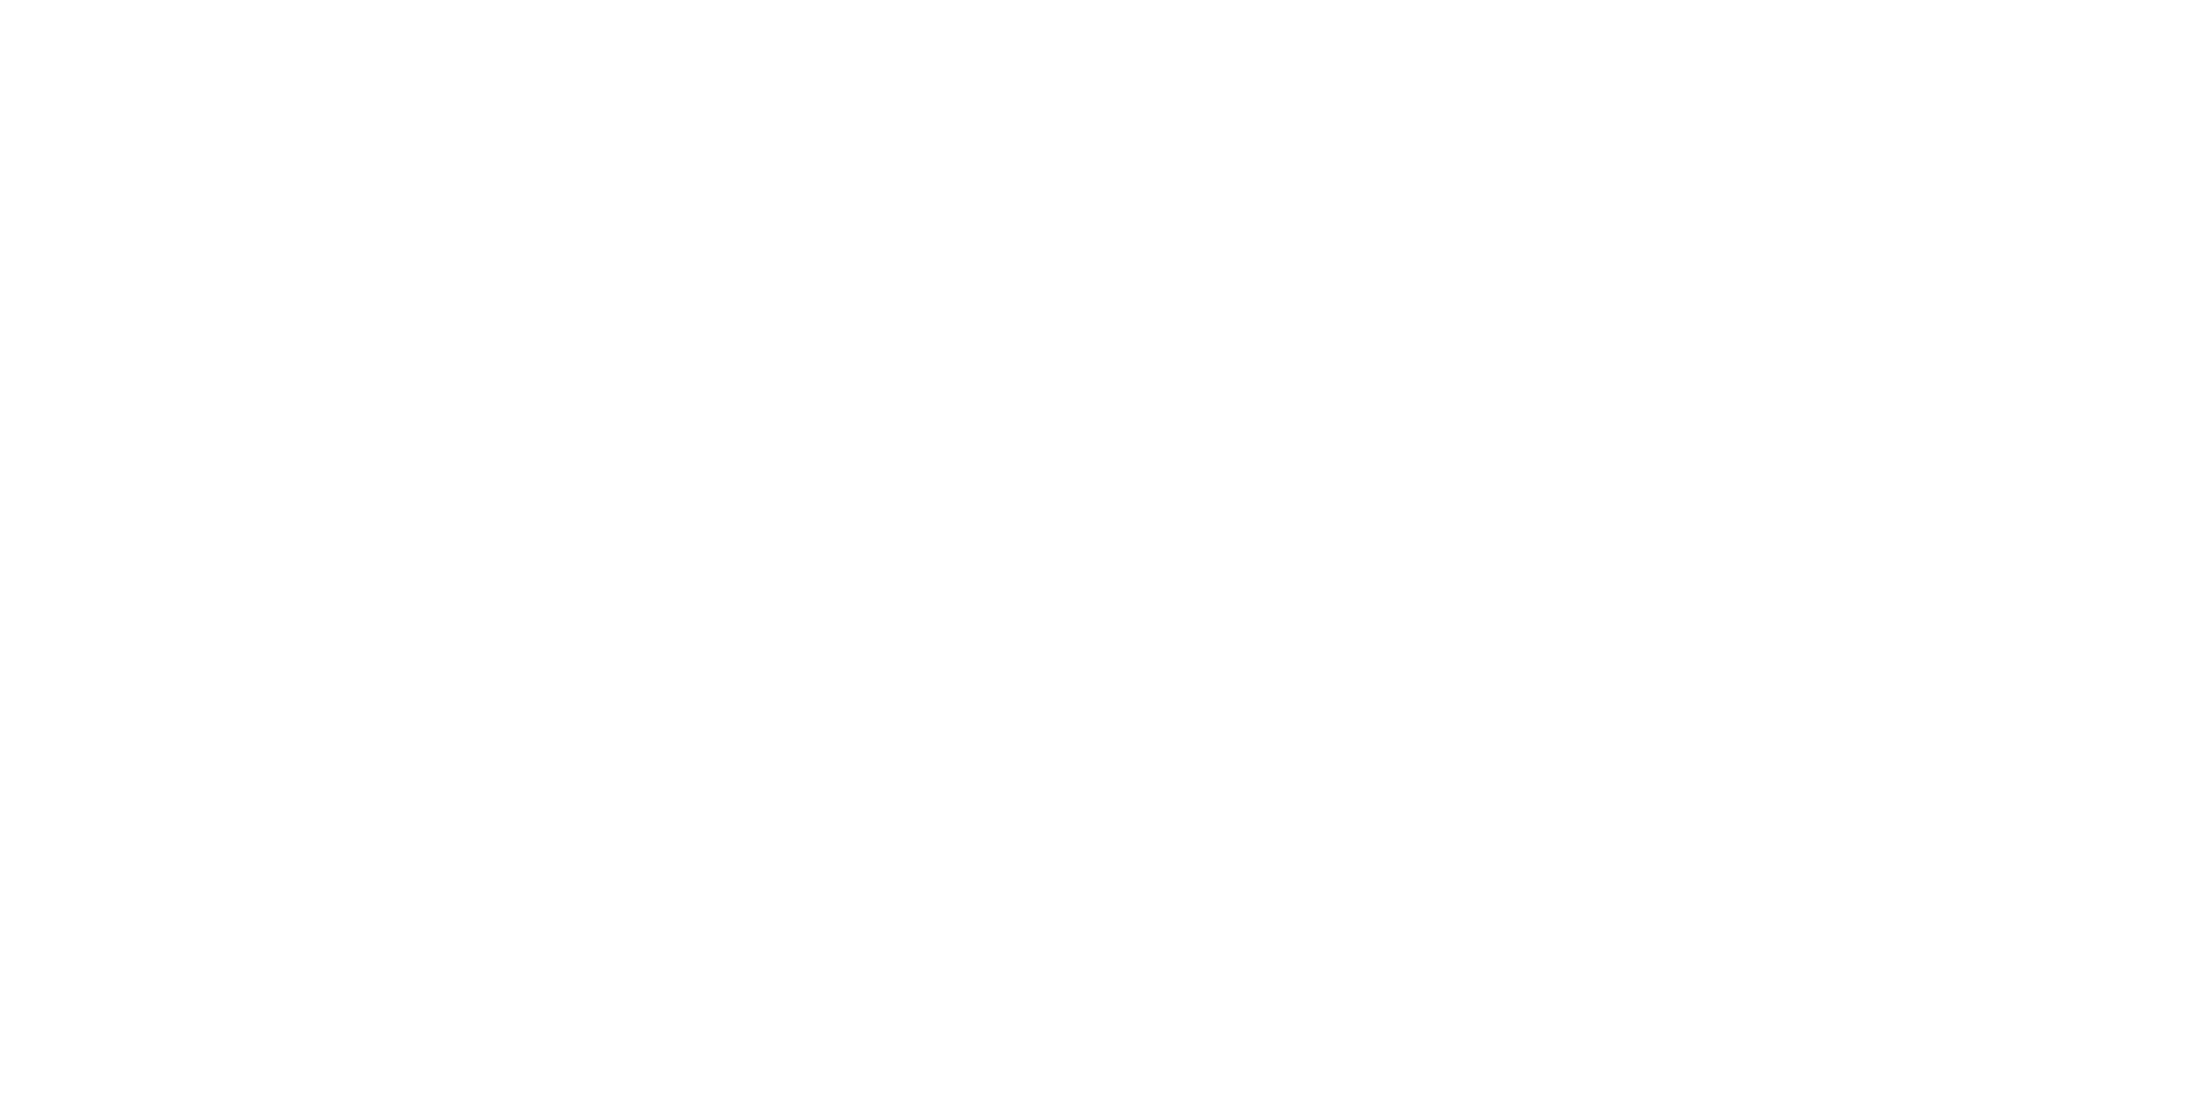 Salt Gypsy